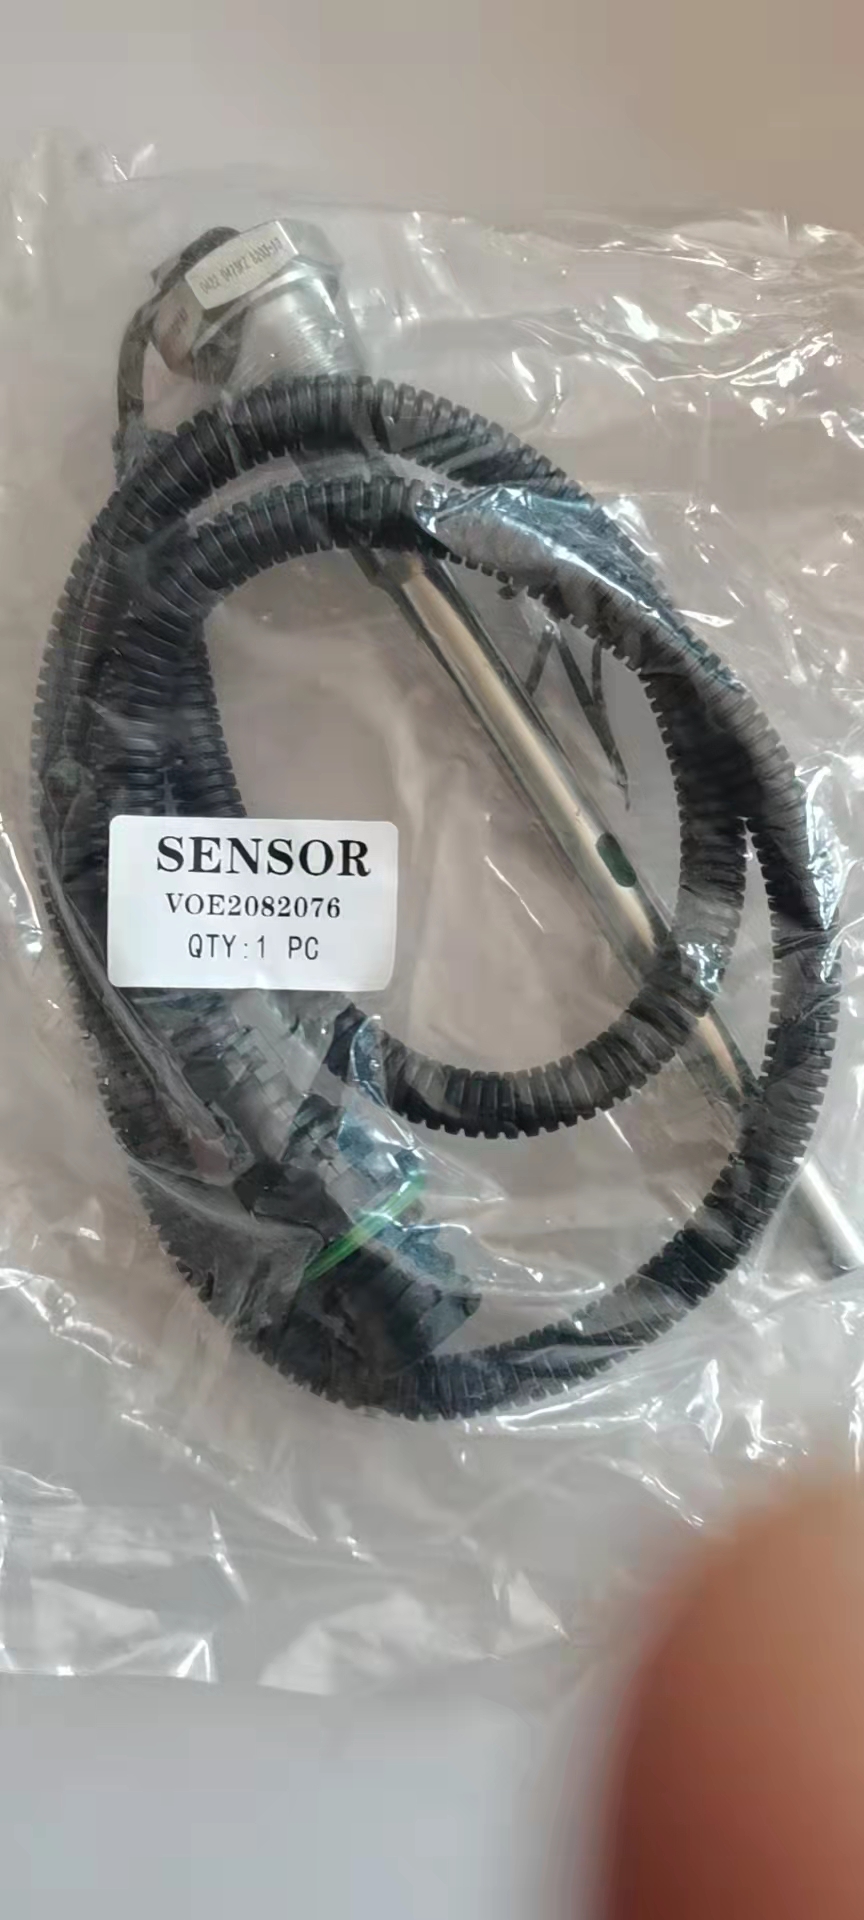 VOE20829076 sensor